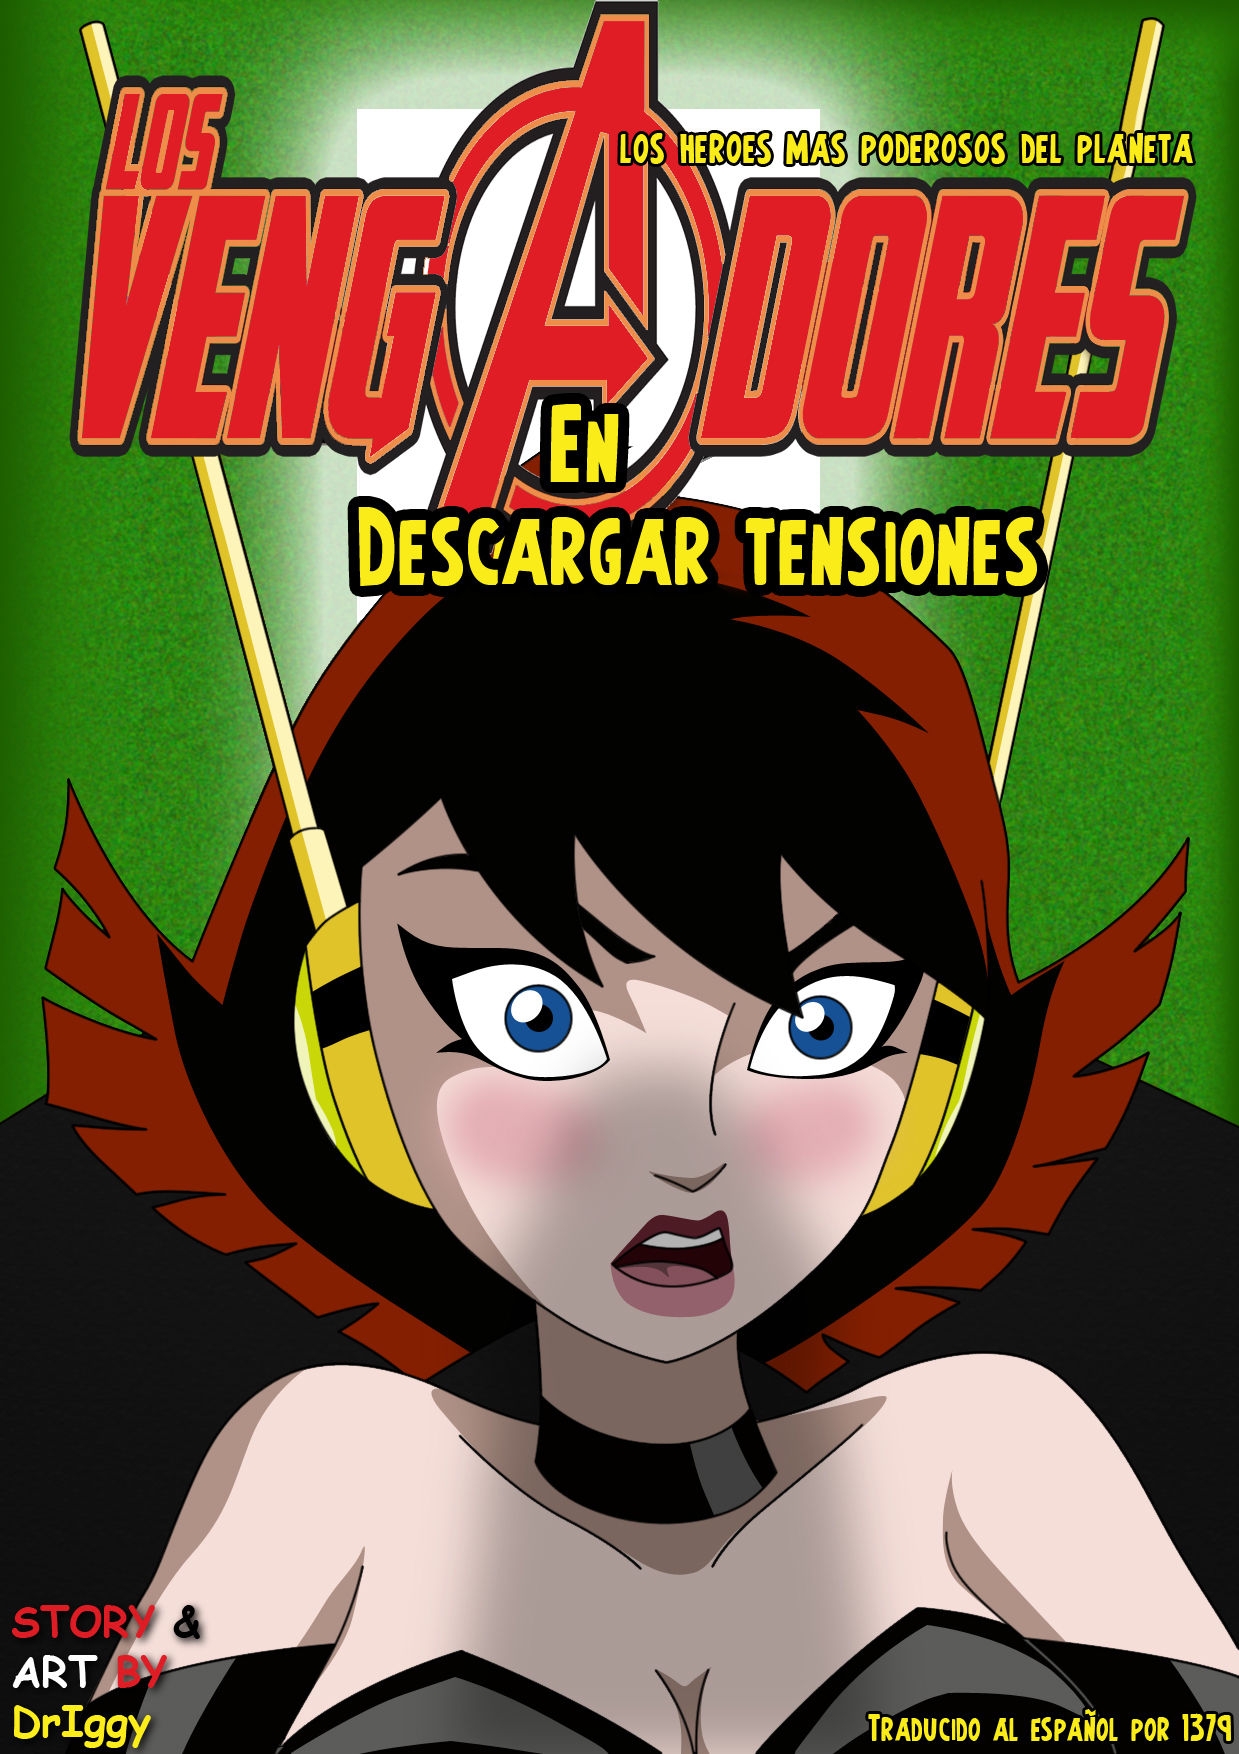 [Spanish] Los vengadores (Driggy) Descargar tensiones 0